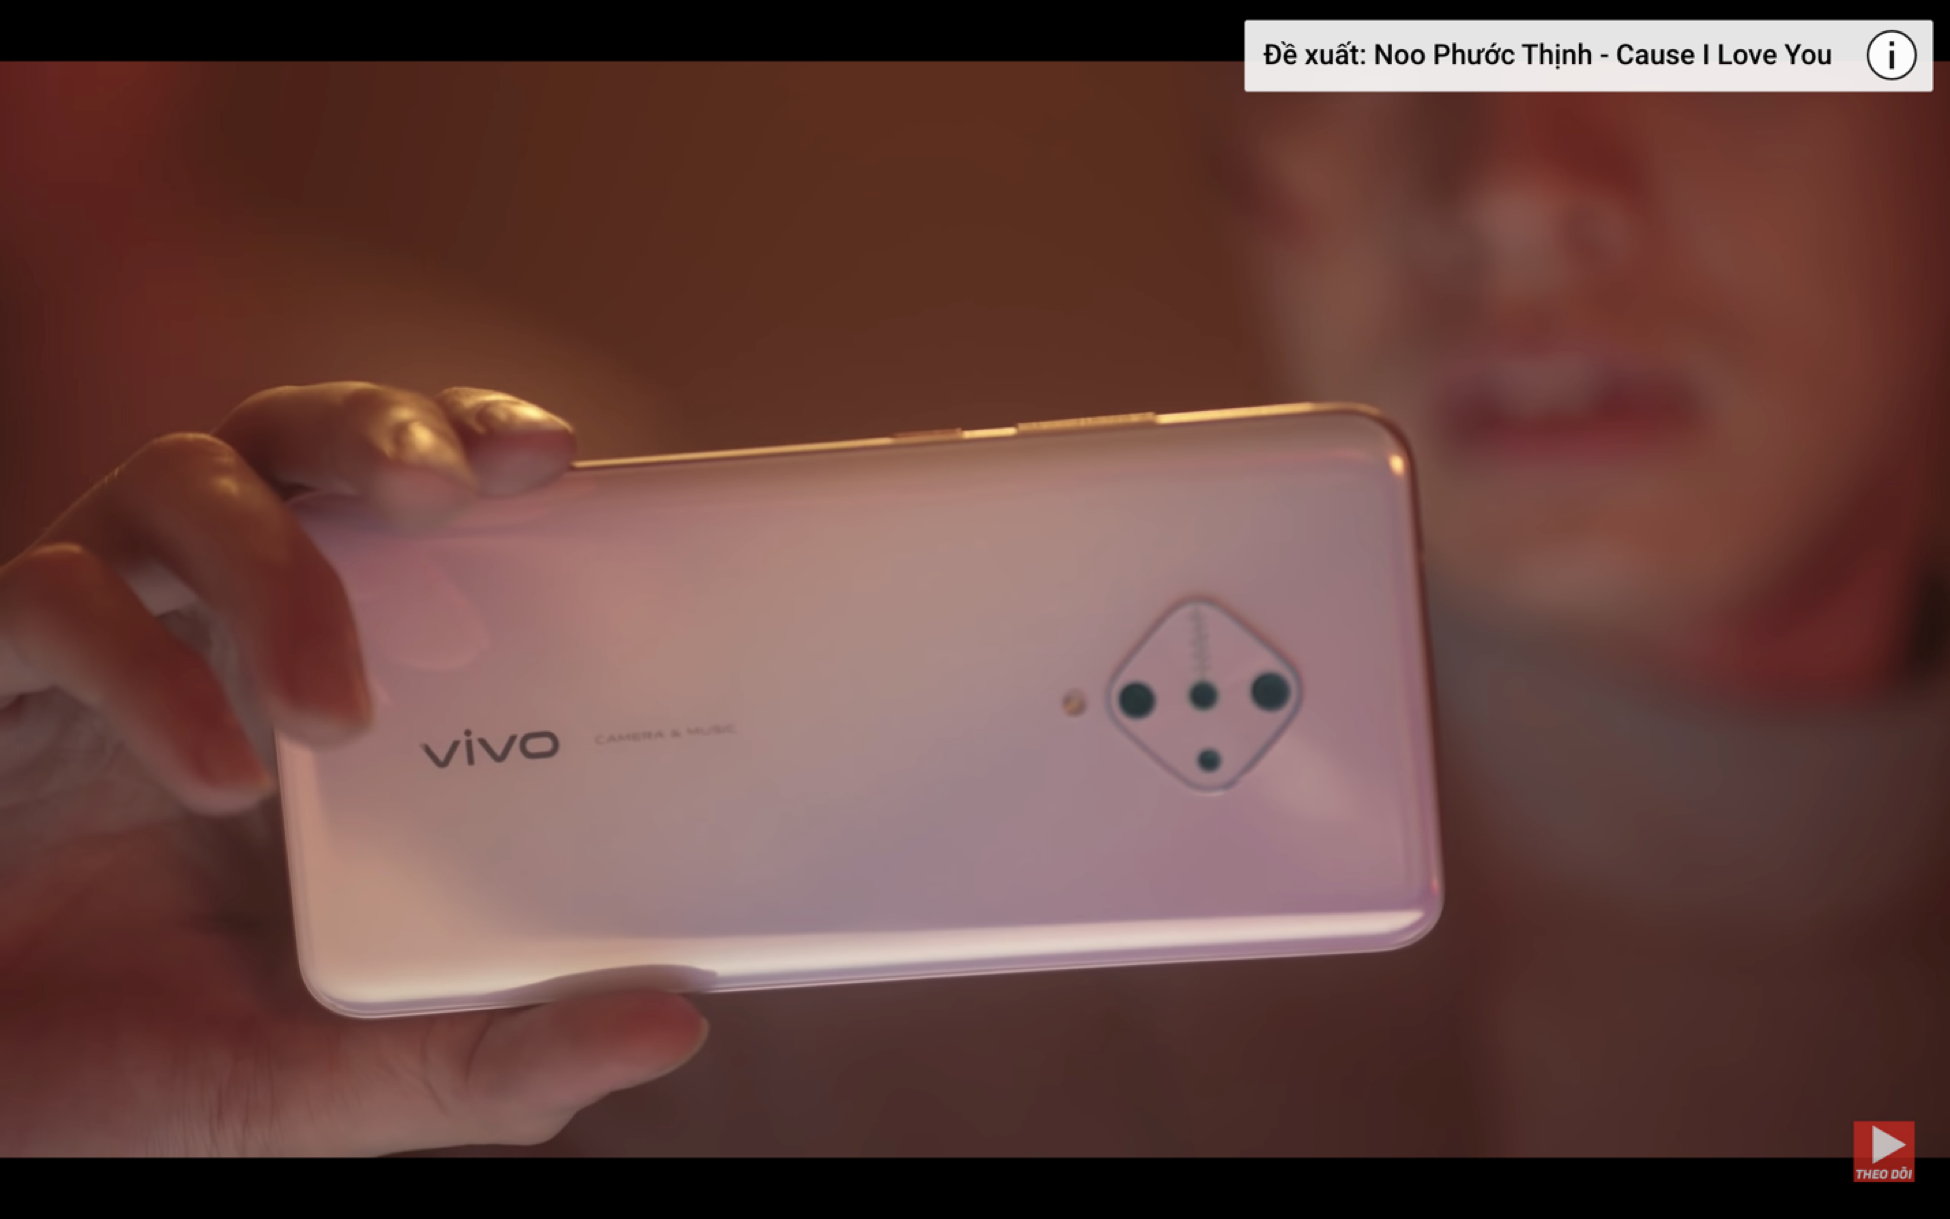 Vivo sẽ chính thức ra mắt smartphone S1 Pro vào đầu tháng 12